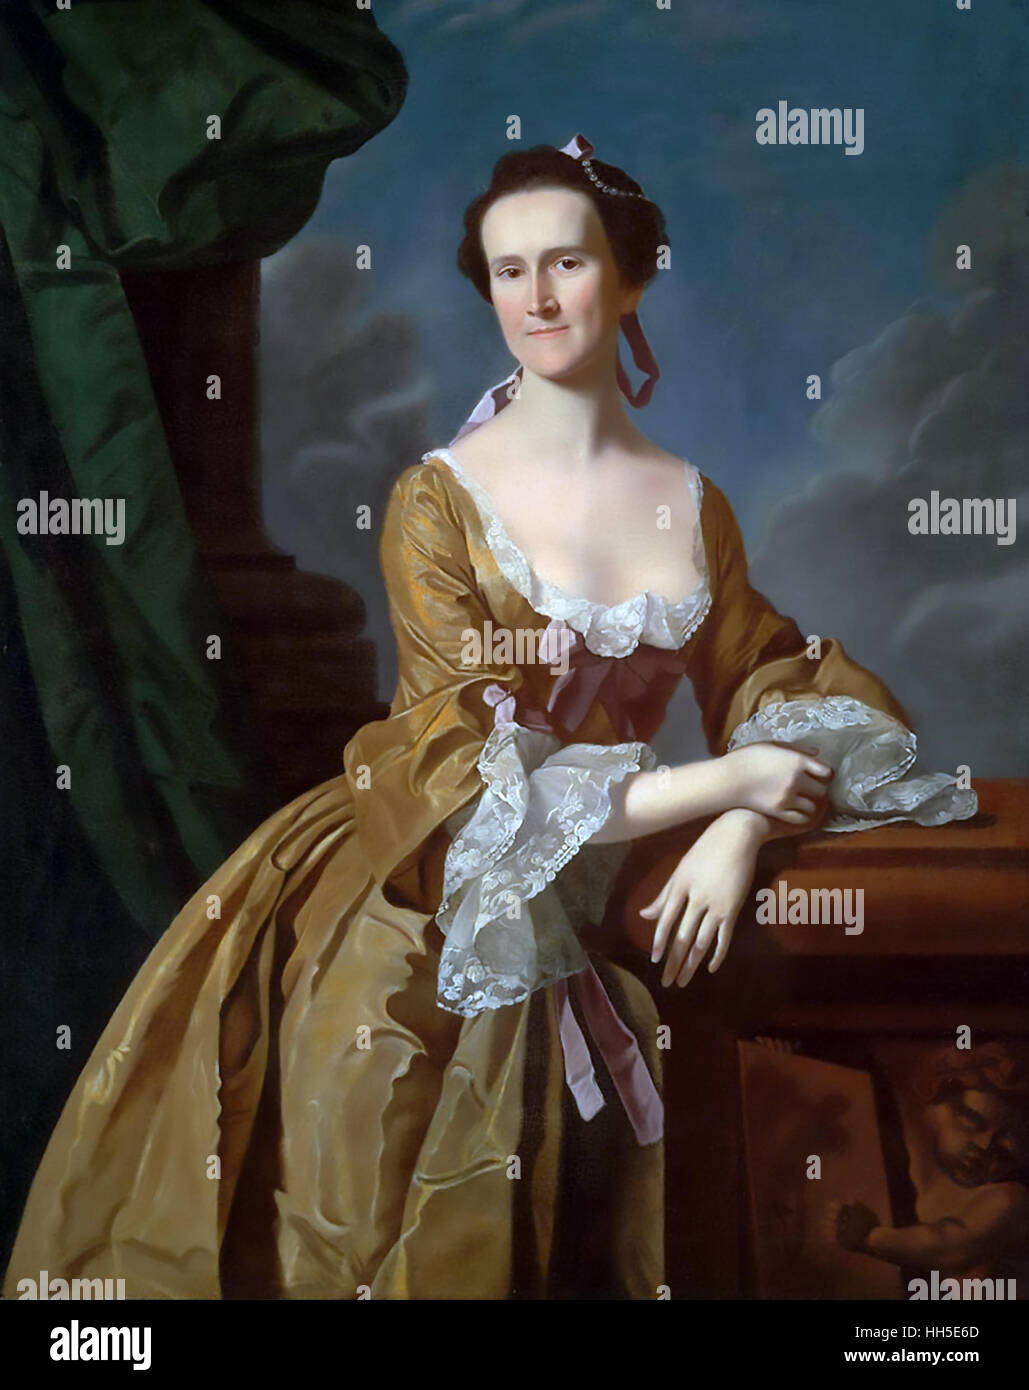 KATHARINE GREENE AMORY (1731-1777) American Society-Lady, die ein Journal während der amerikanischen Revolution geführt. Gemälde ca. 1762. Stockfoto